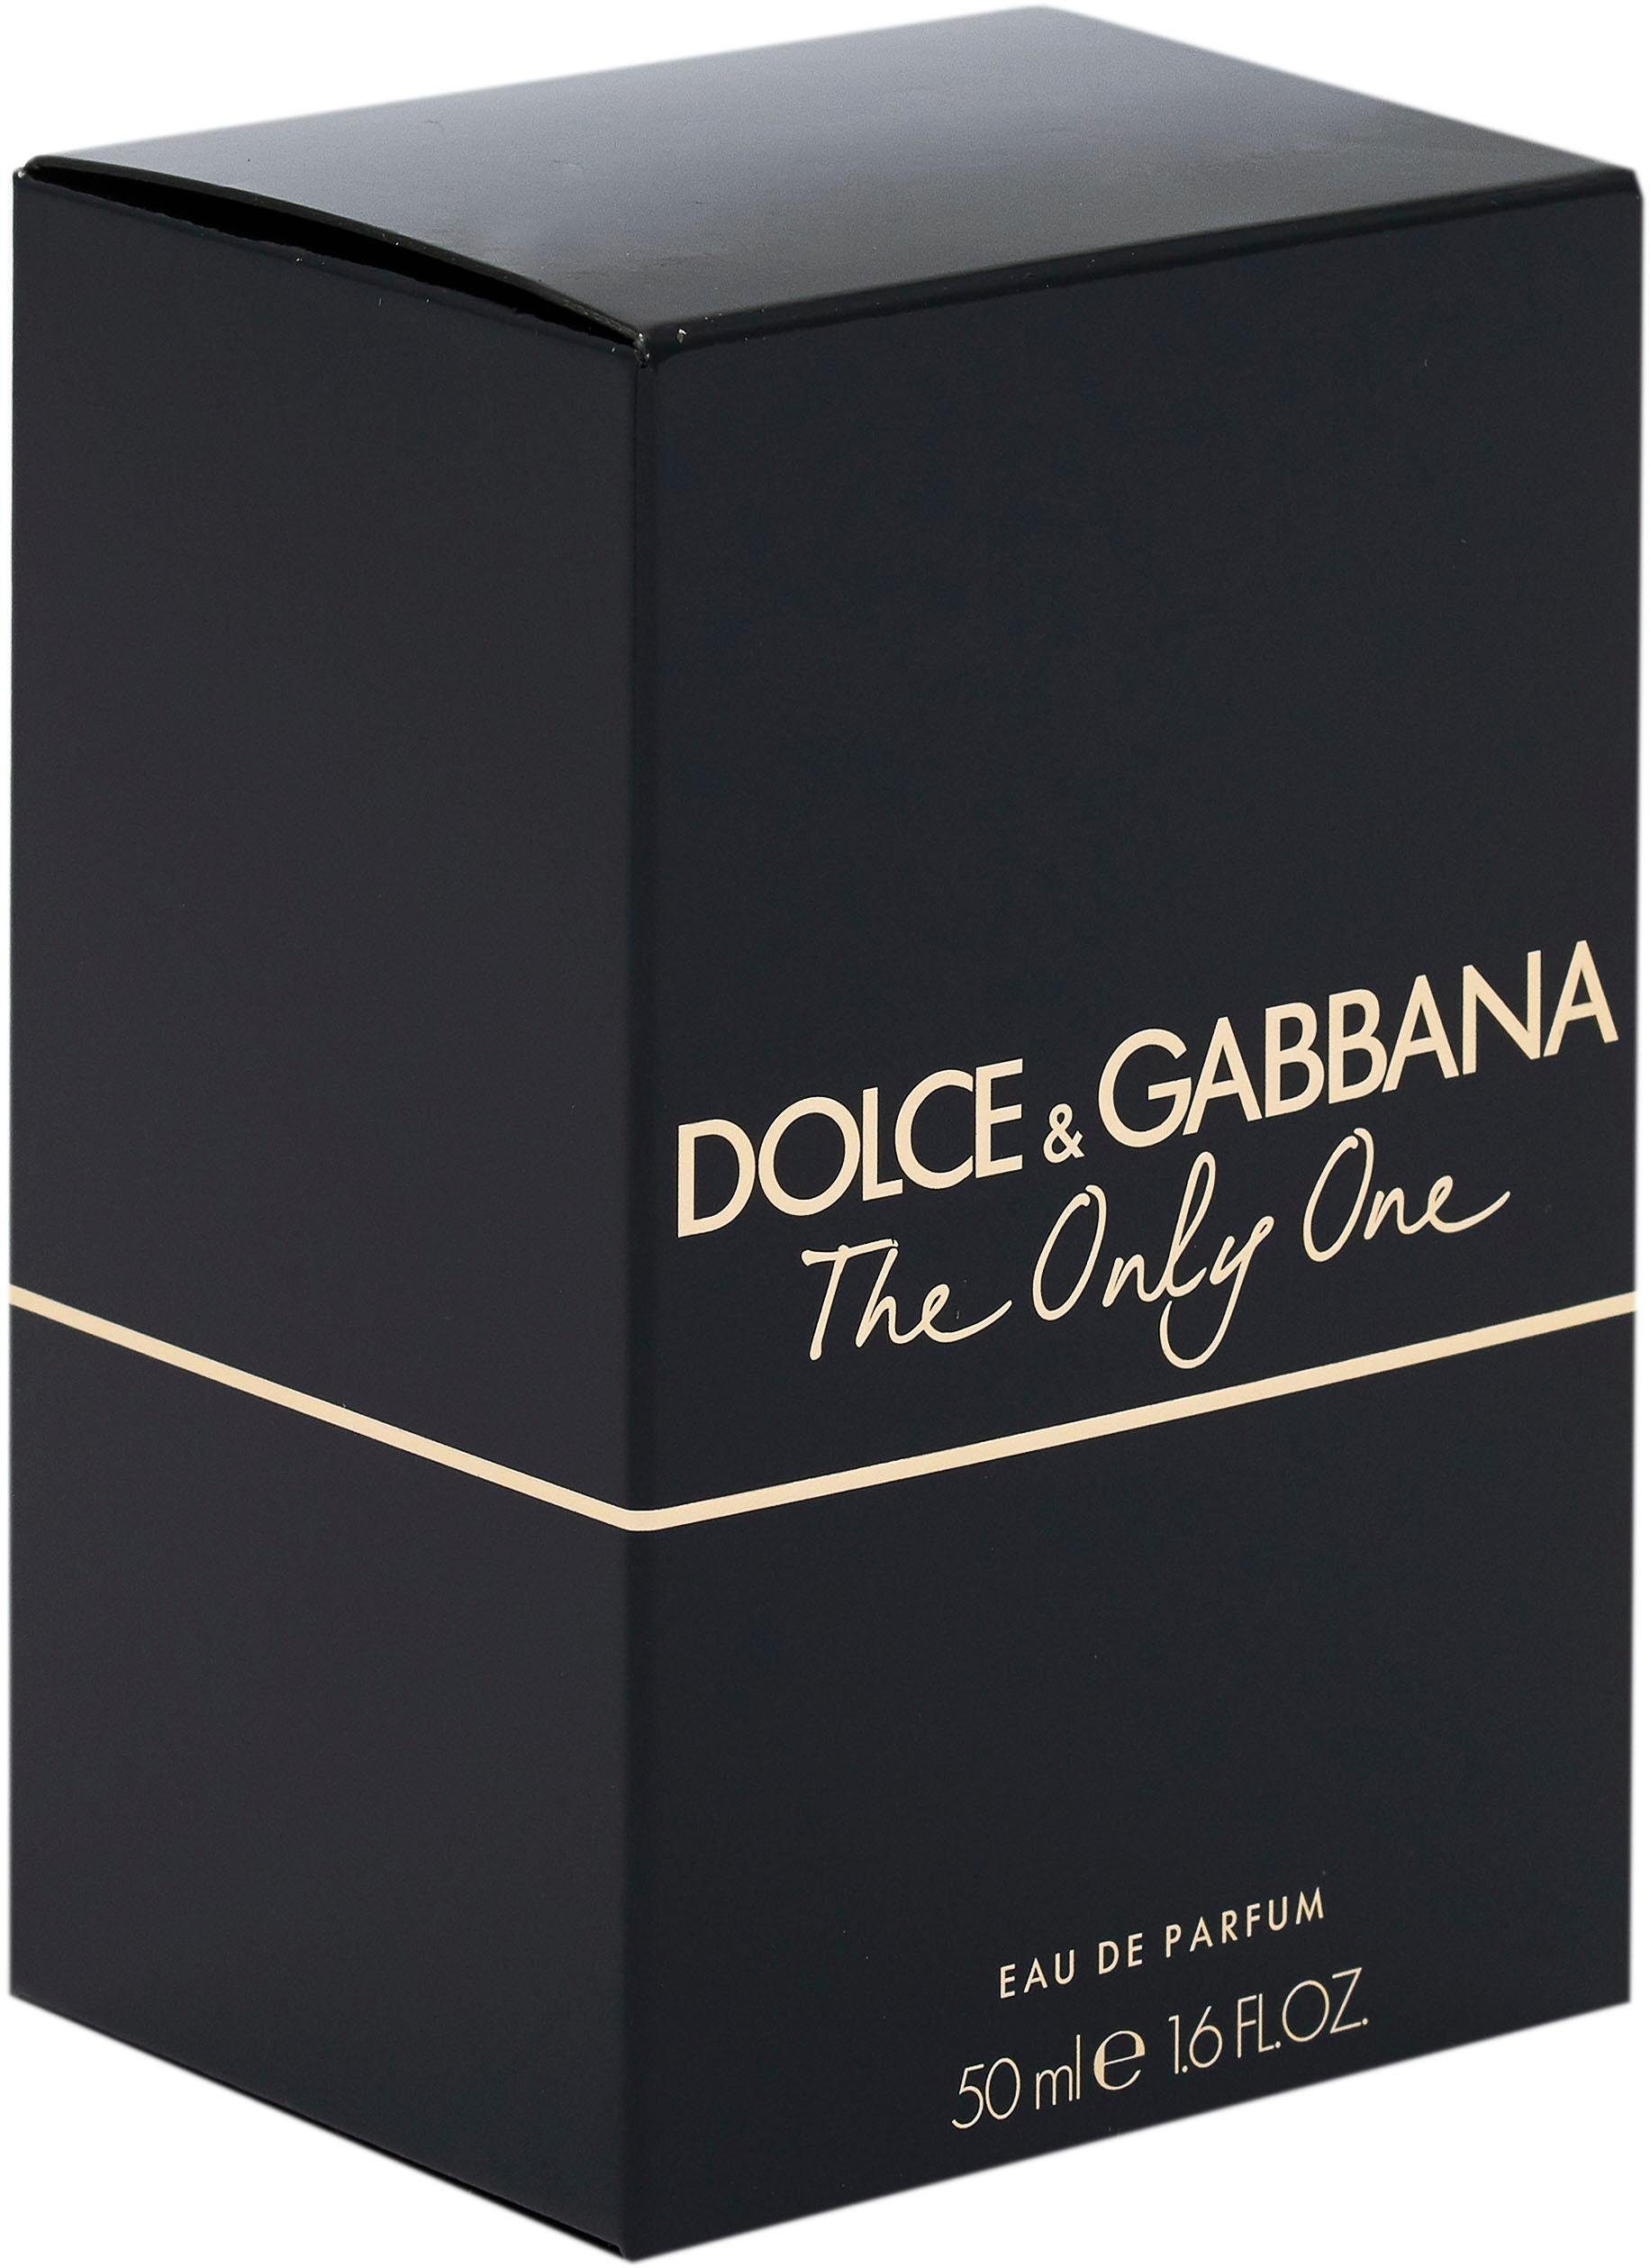 DOLCE & Only GABBANA One de The Eau Parfum